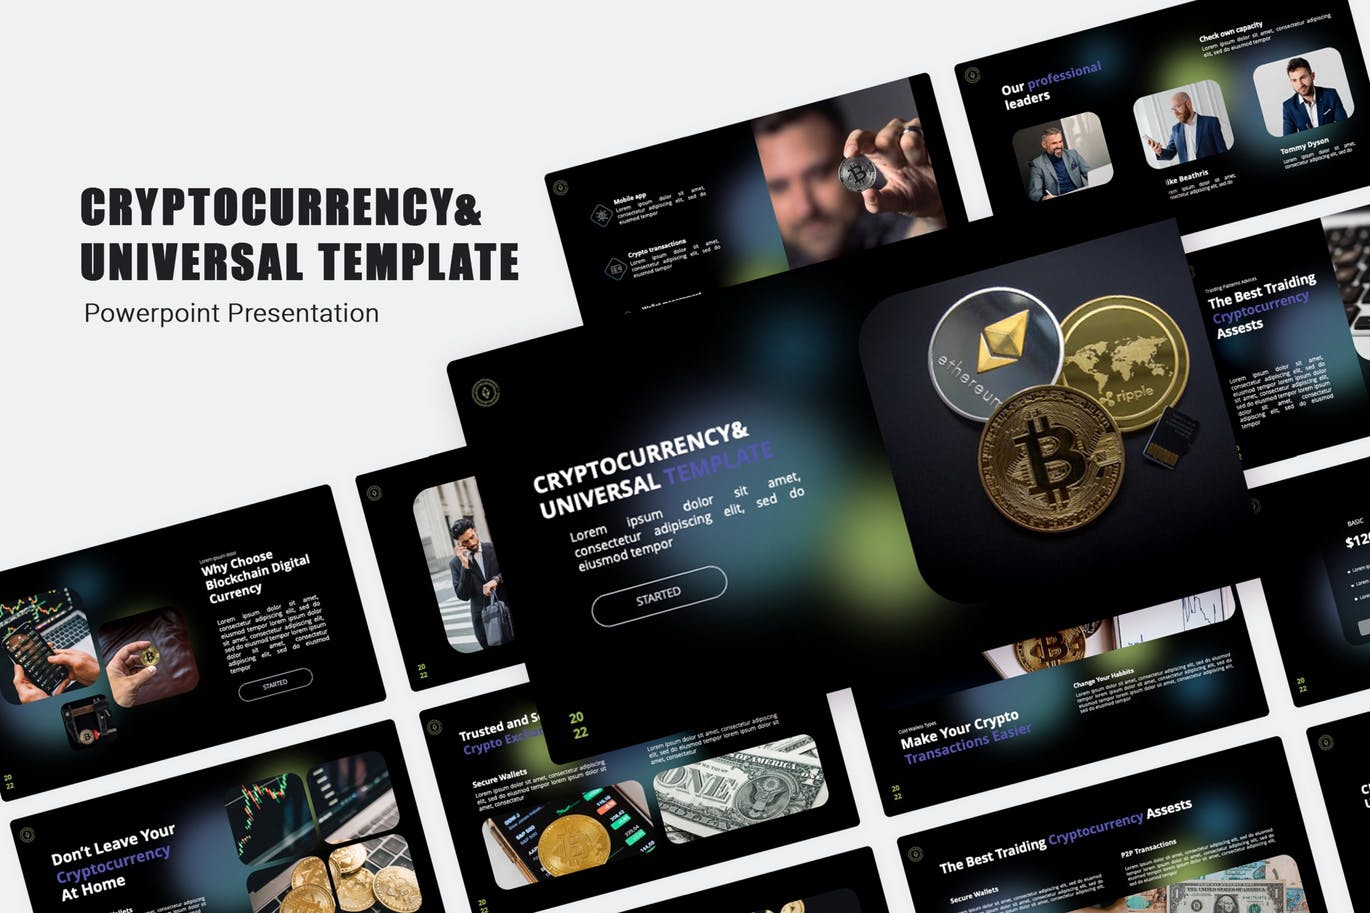 加密货币金融演示PPT模板 Cryptocurrency PowerPoint Template 幻灯图表 第1张